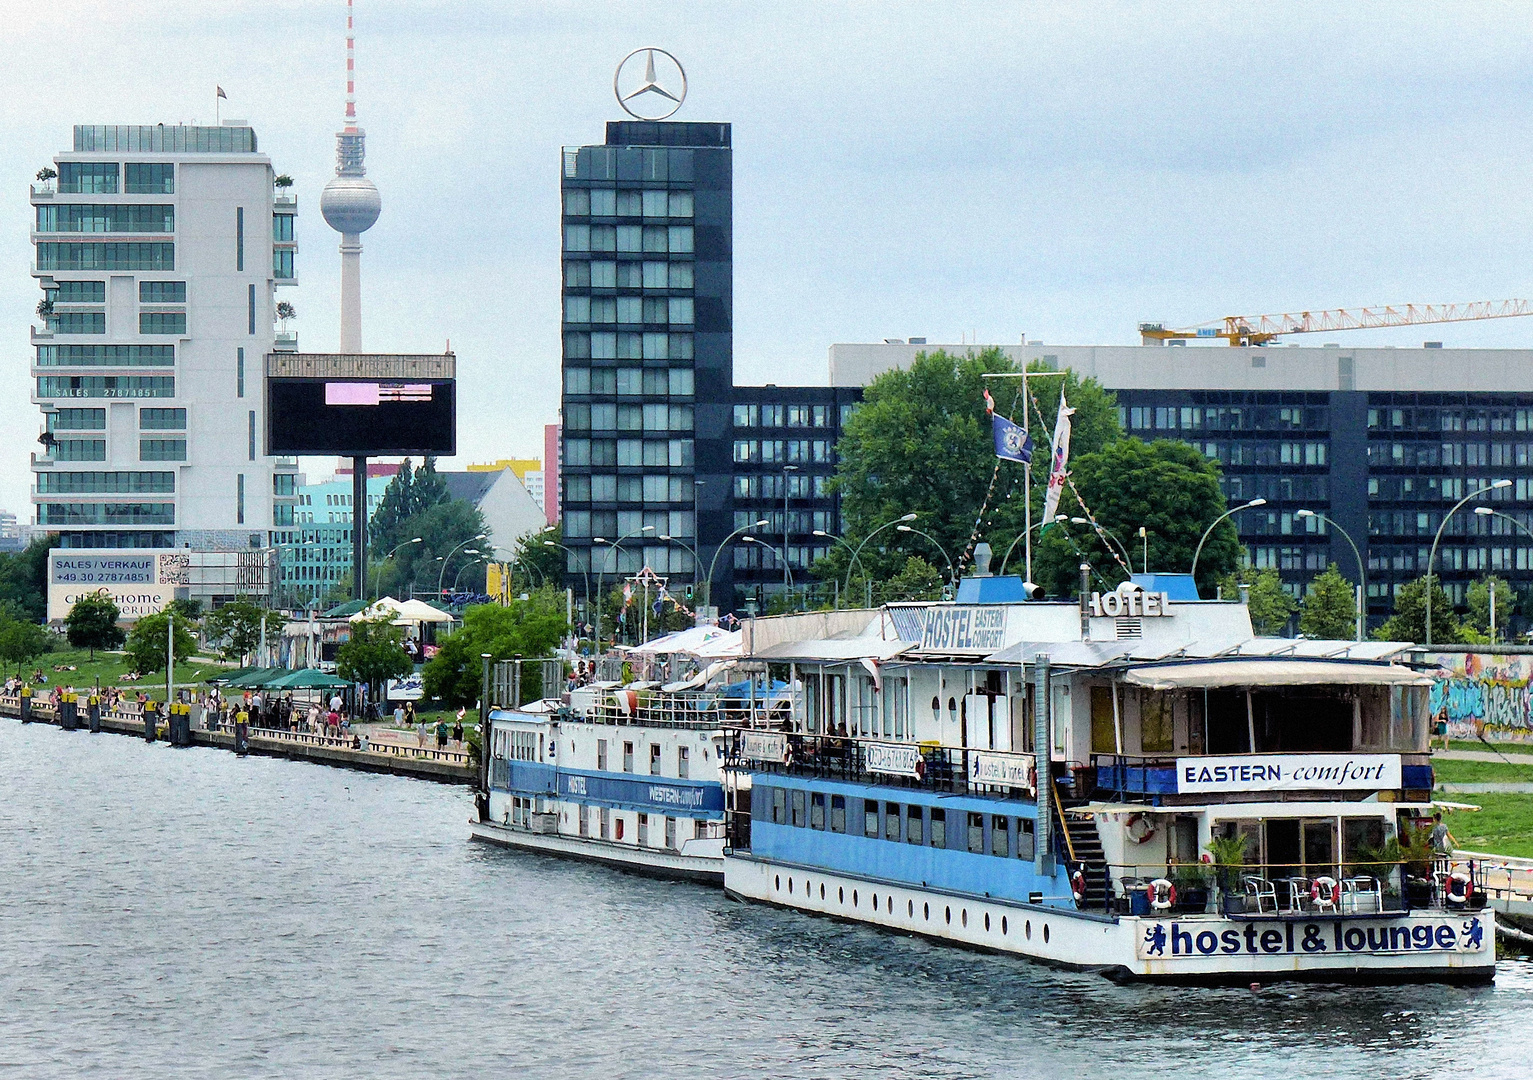 Schwimmendes Hotel in Berlin